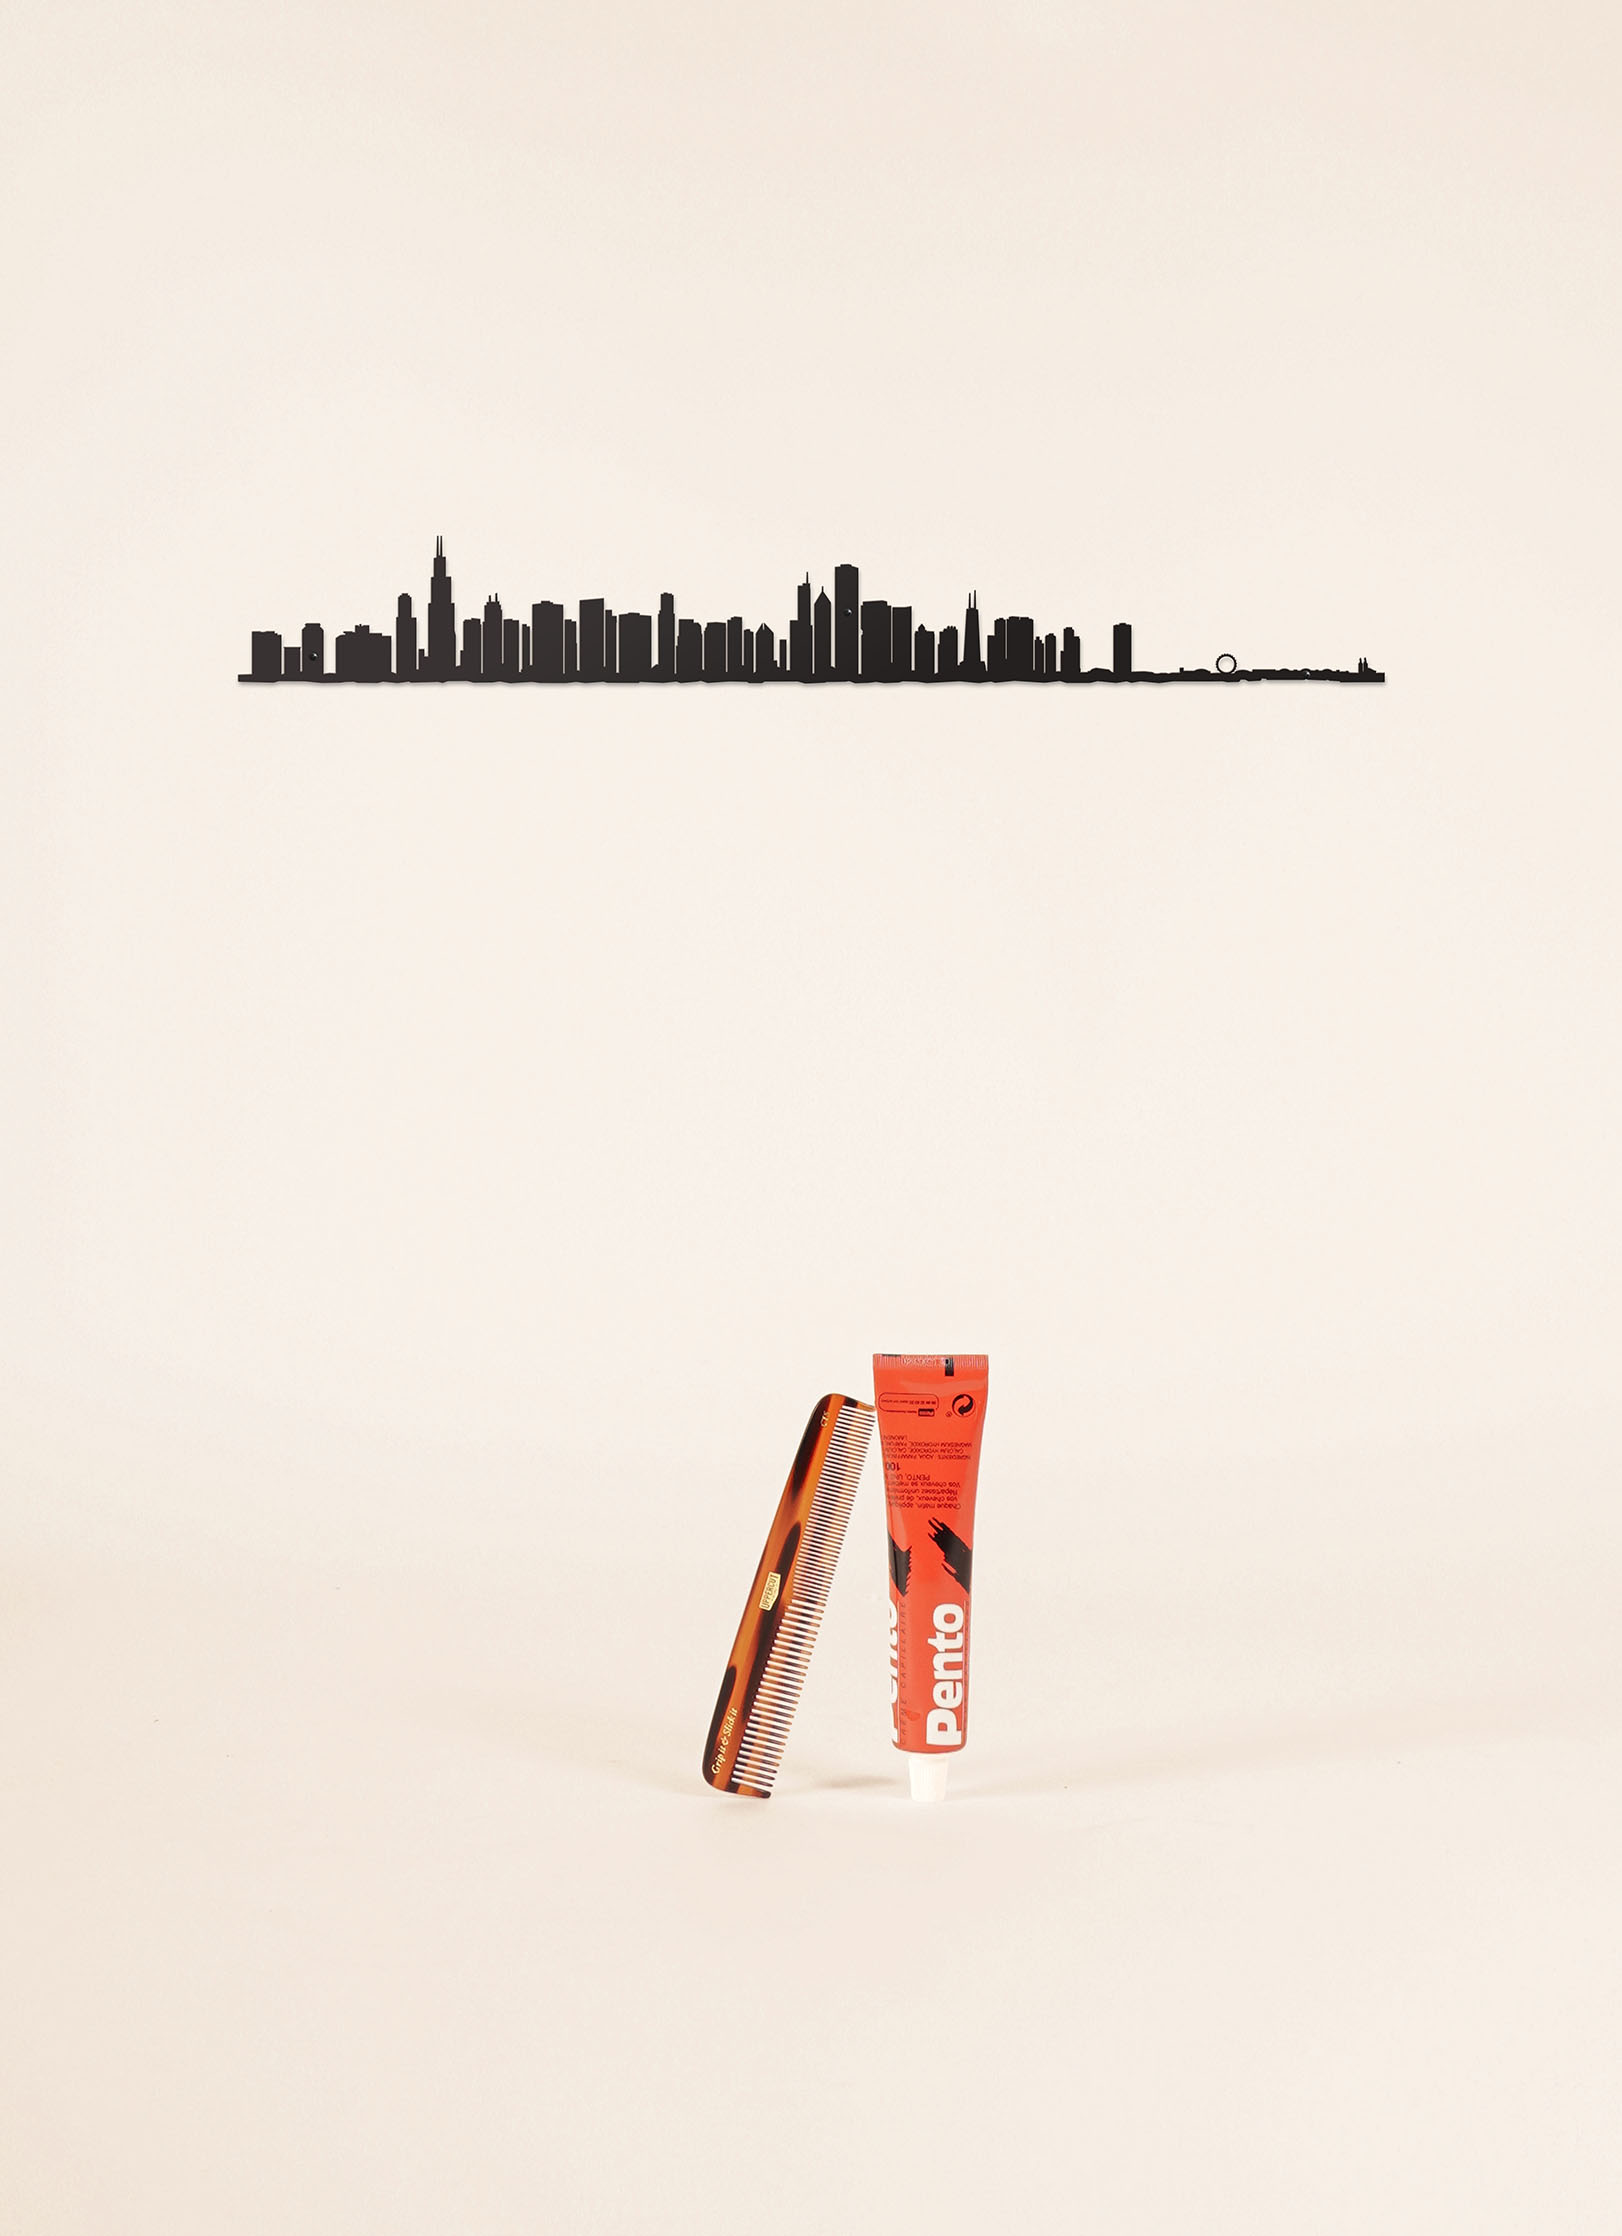 Cliché skyline de Chicago